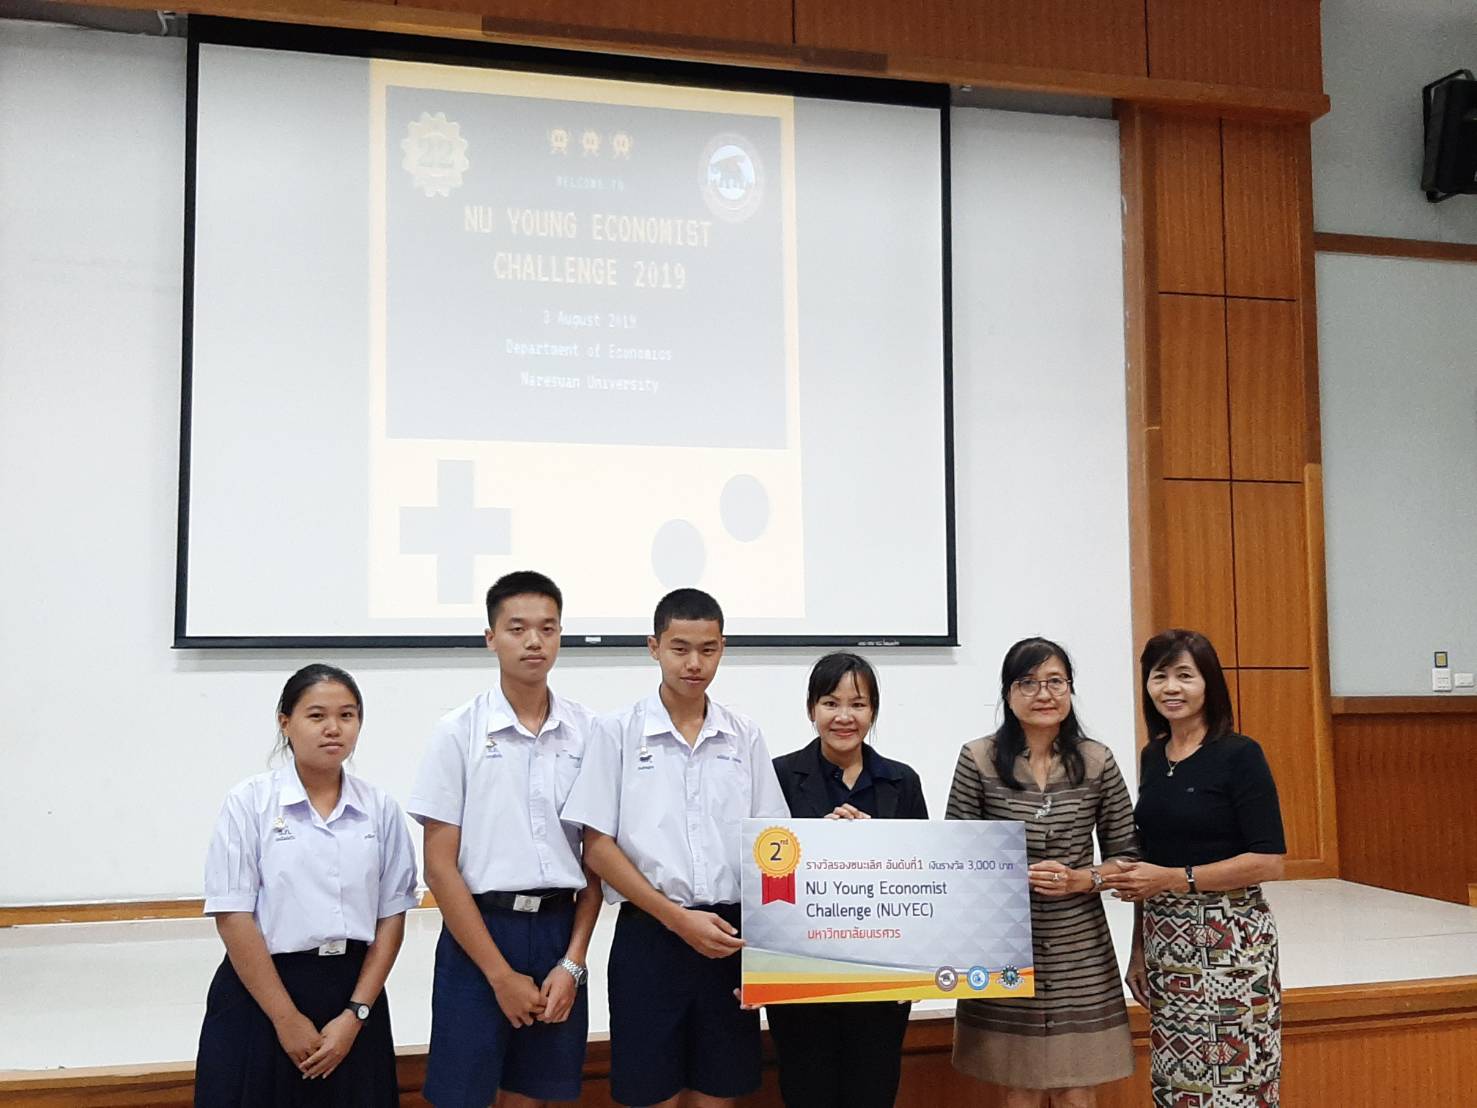 นักเรียนโรงเรียนอุตรดิตถ์คว้ารางวัลรองชนะเลิศอันดับ 1 ในการแข่งขันตอบปัญหาเศรษฐศาสตร์ NU Young Economist Challenge 2019